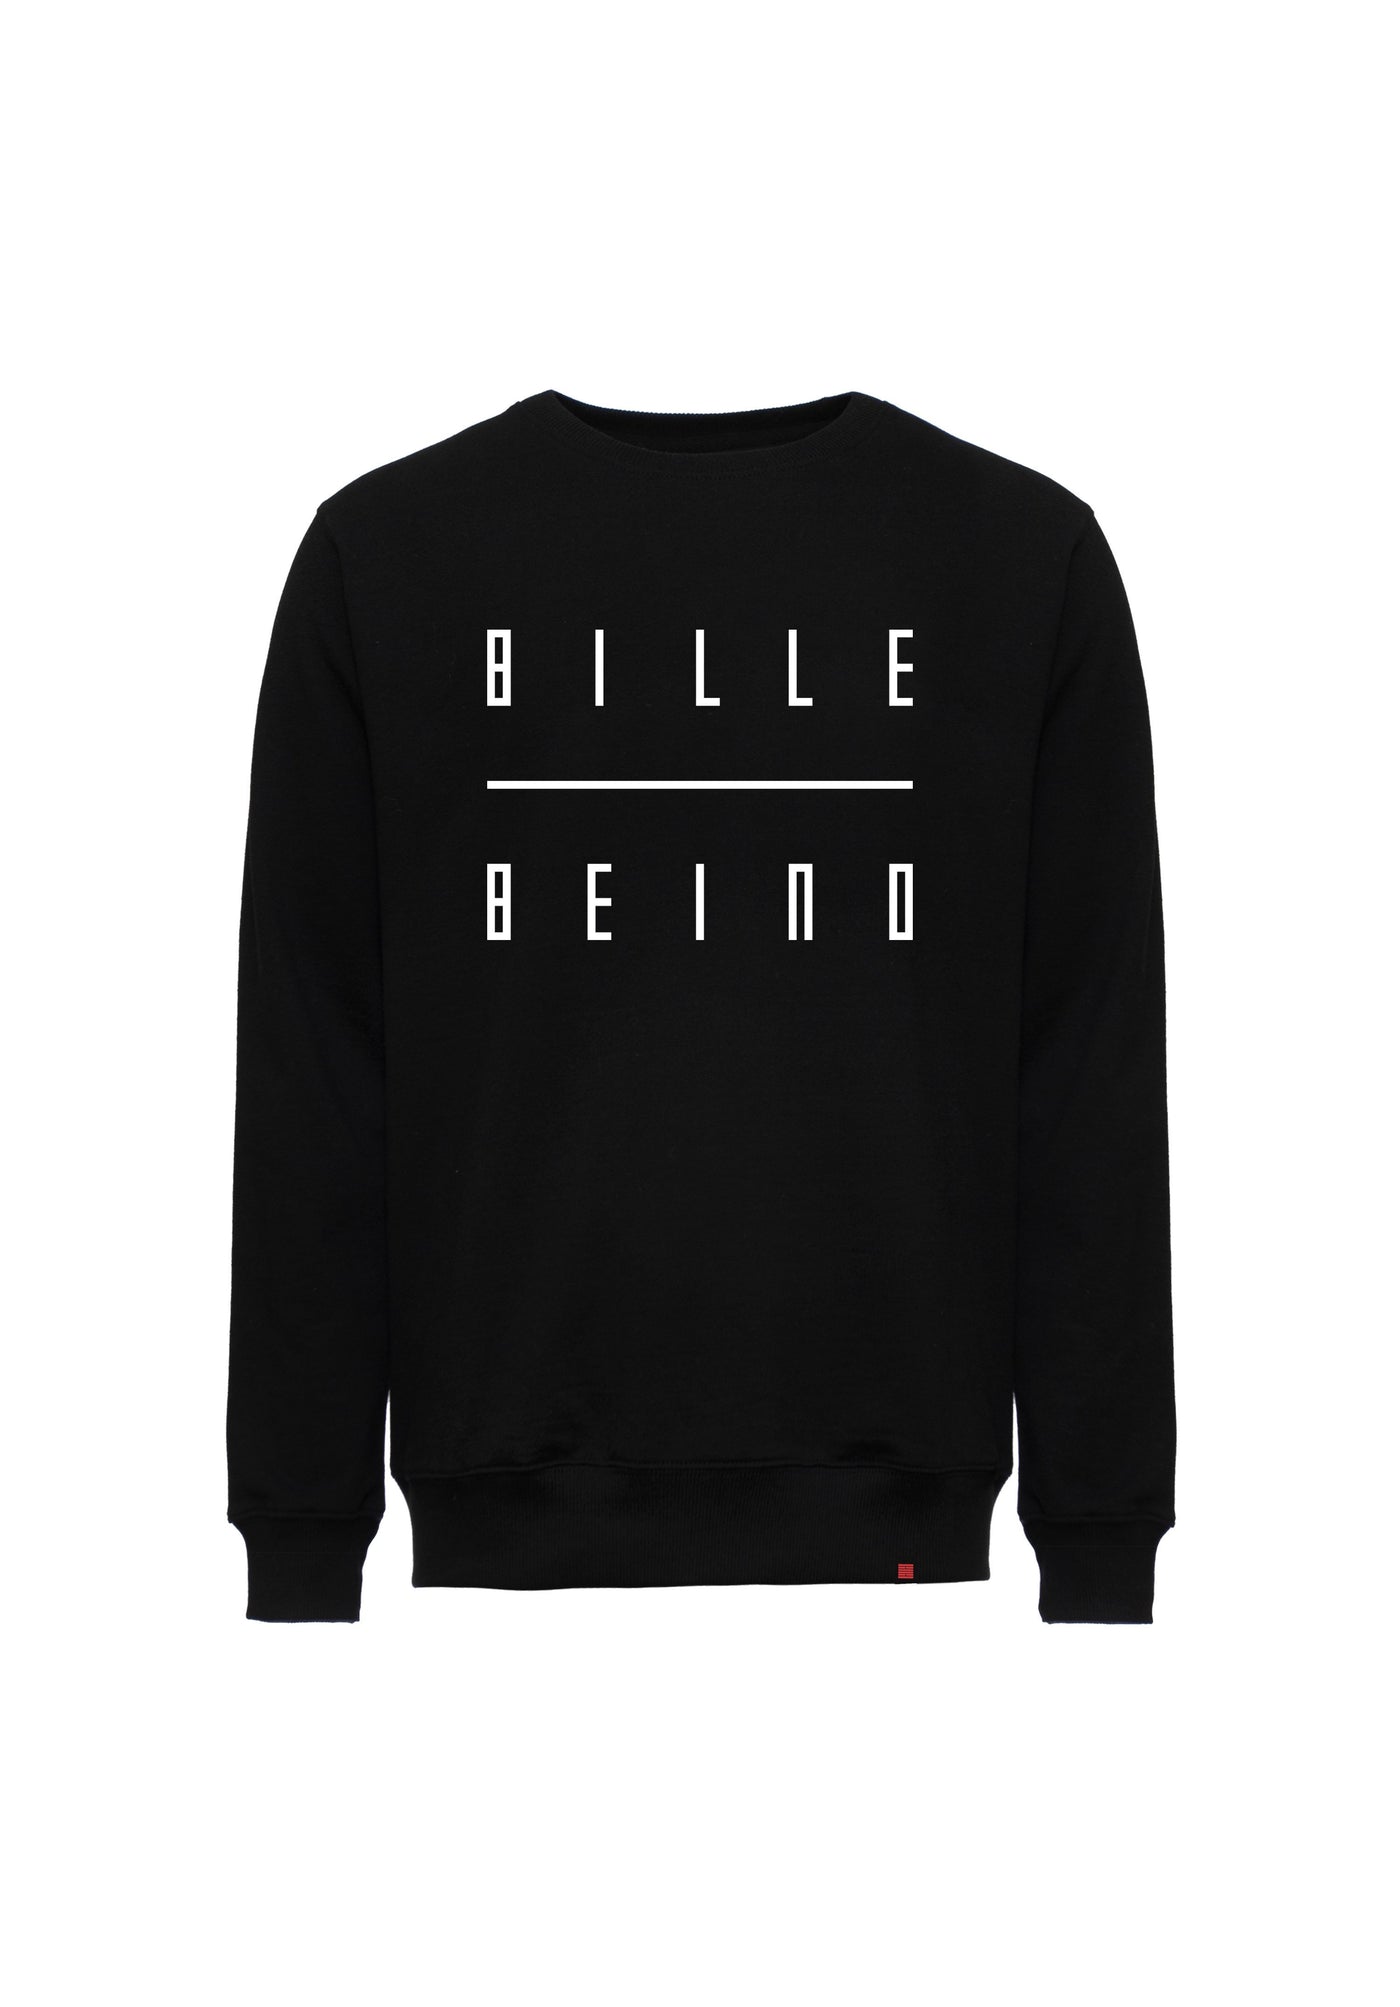 Billebeino Sweatshirt Black Billebeino